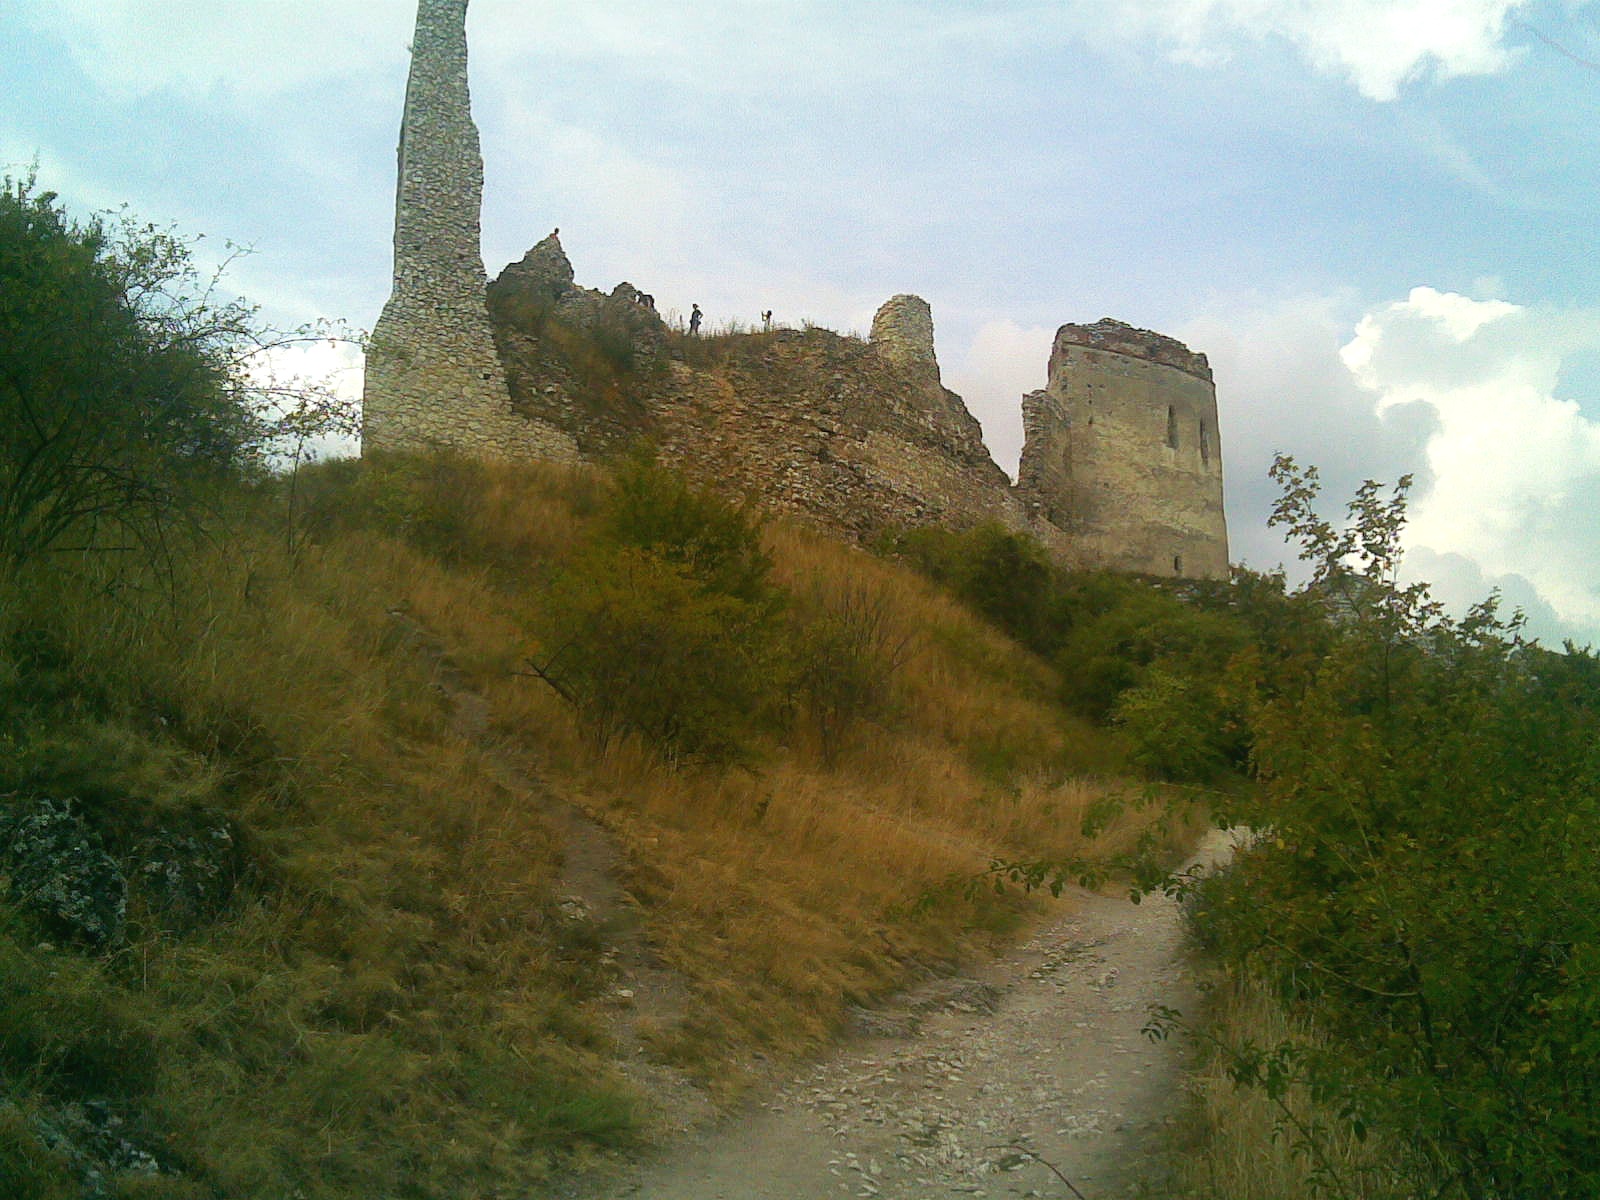  Photo of Čachtice castle by   Pavel Ševela   (sevela.p)  / Wikimedia Commons ,  CC-BY-SA-3.0  